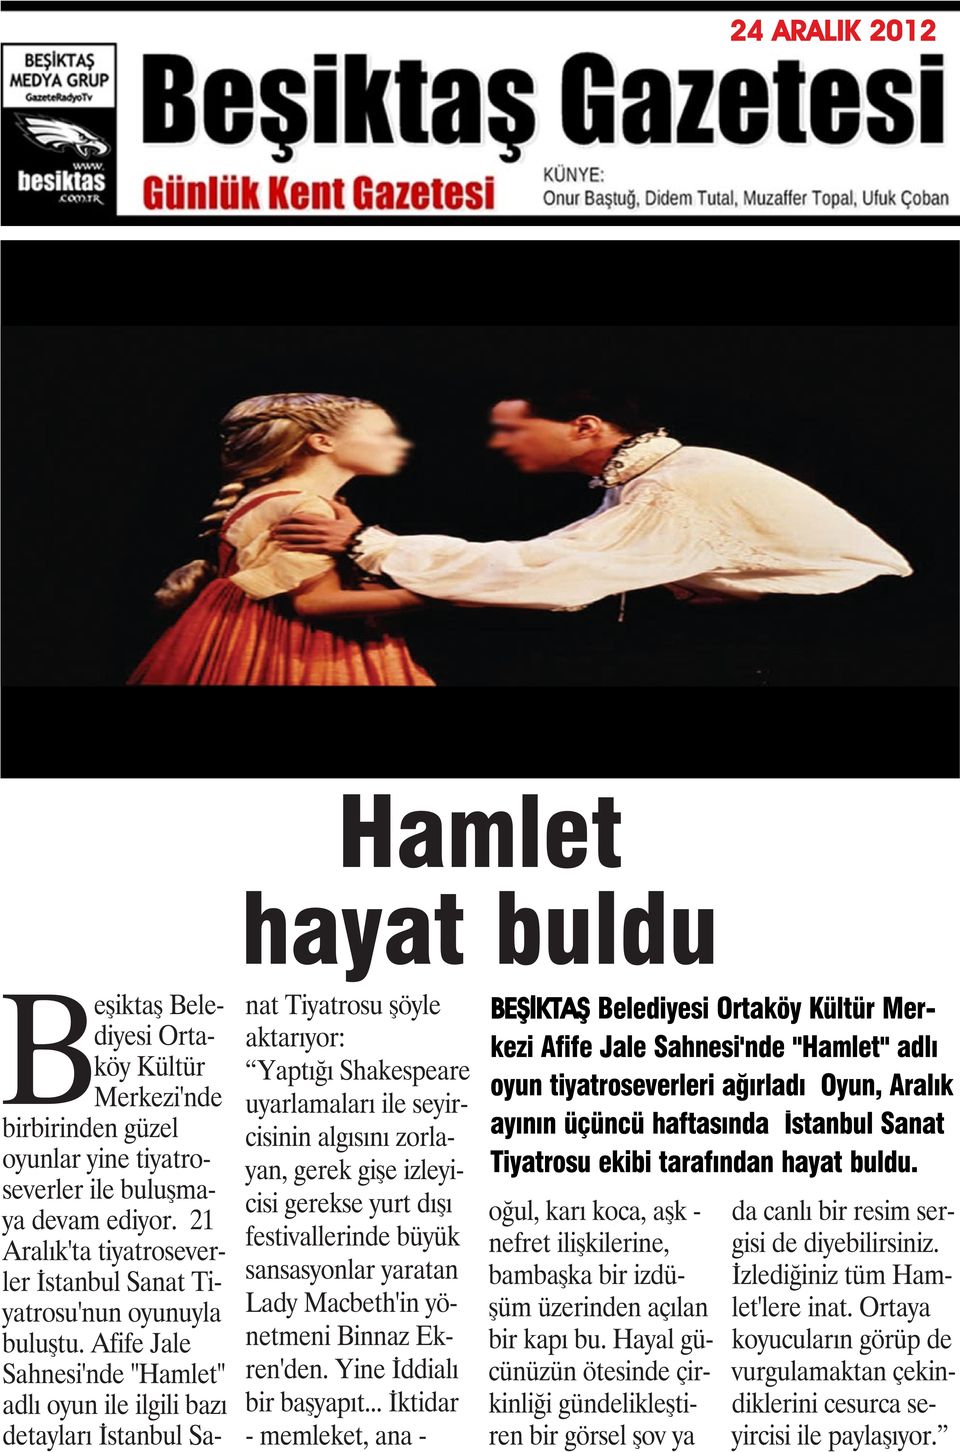 Afife Jale Sahnesi'nde "Hamlet" adlı oyun ile ilgili bazı detayları İstanbul Sanat Tiyatrosu şöyle aktarıyor: Yaptığı Shakespeare uyarlamaları ile seyircisinin algısını zorlayan, gerek gişe